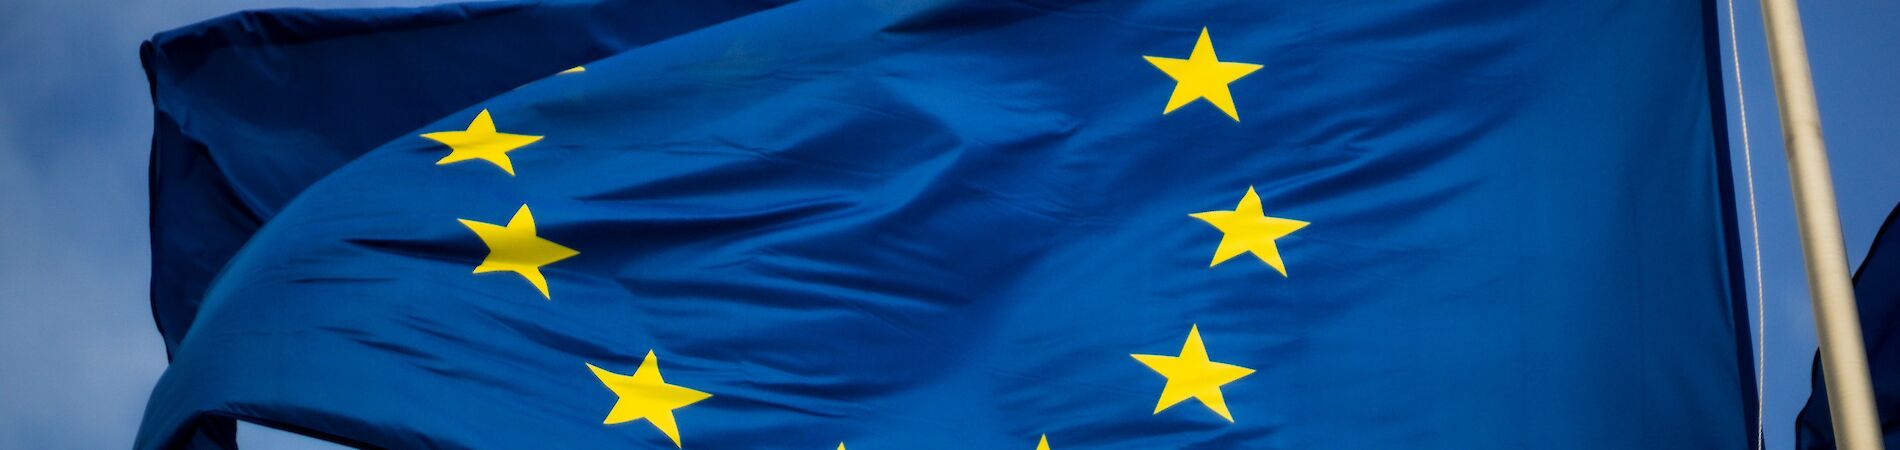 Flagge der EU vor blauem Himmel